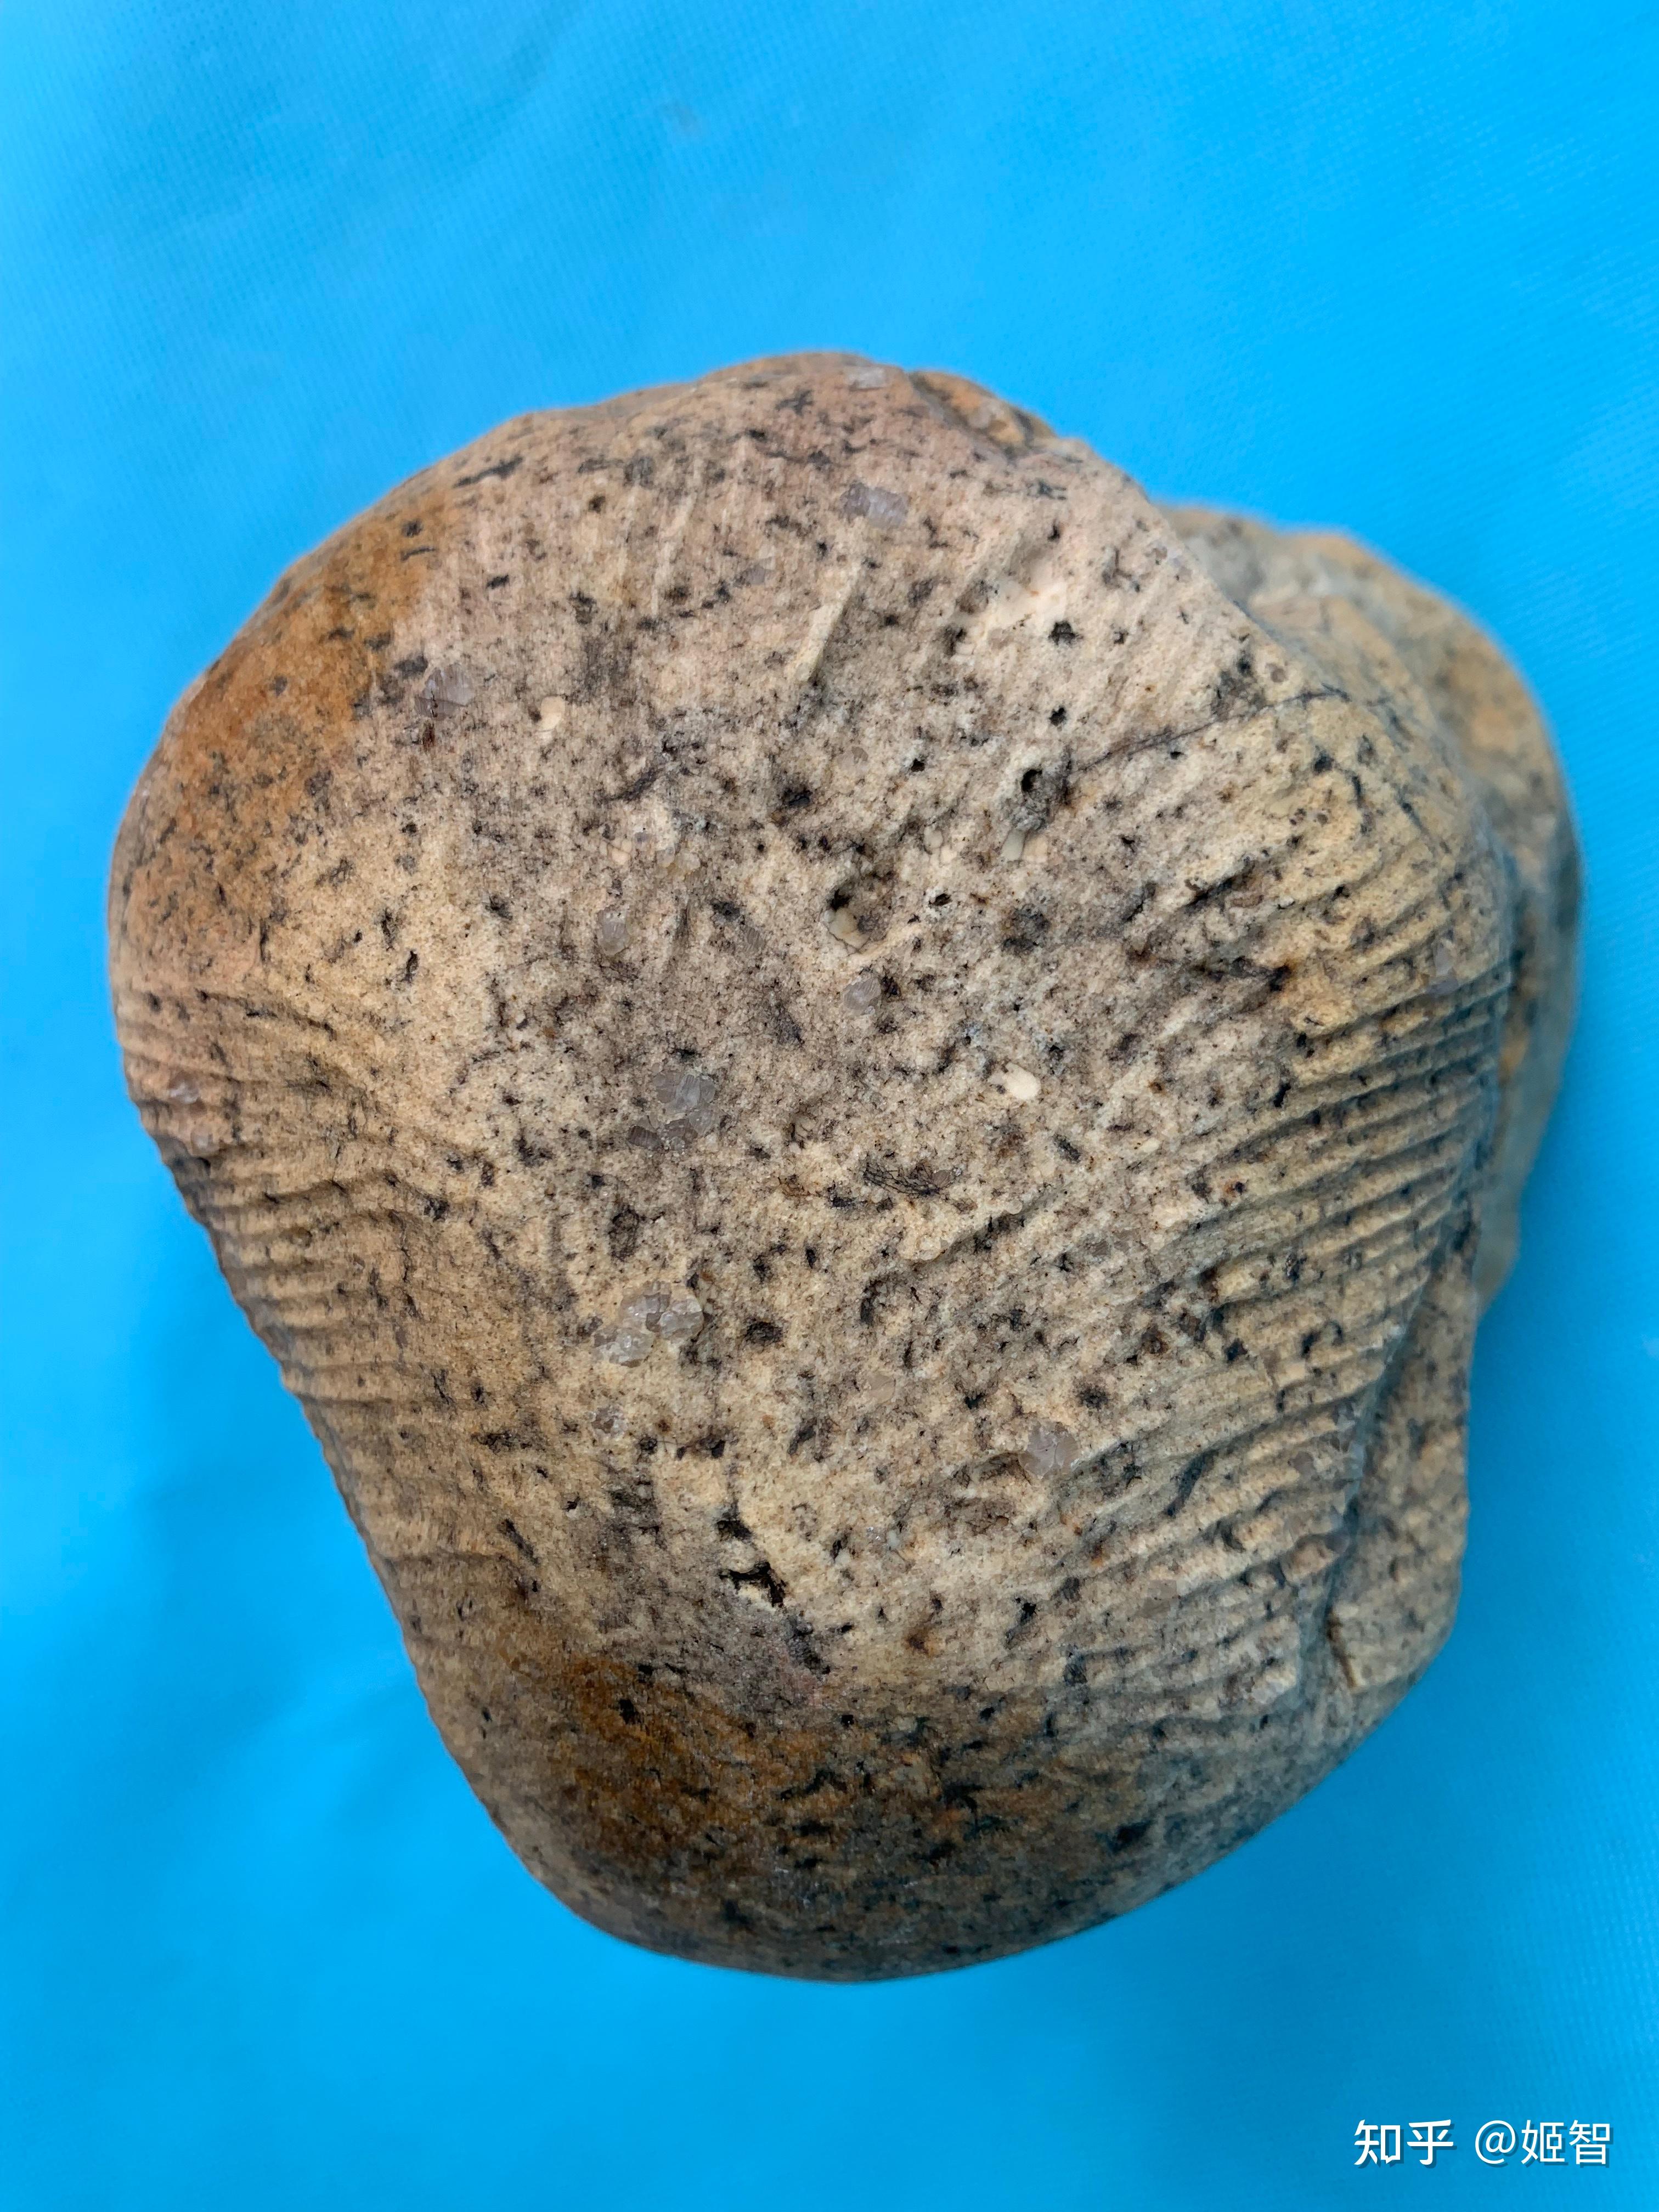 宁夏陨石收藏研究会会长(图中)这块定向顽火辉石球粒陨石的头部顶端